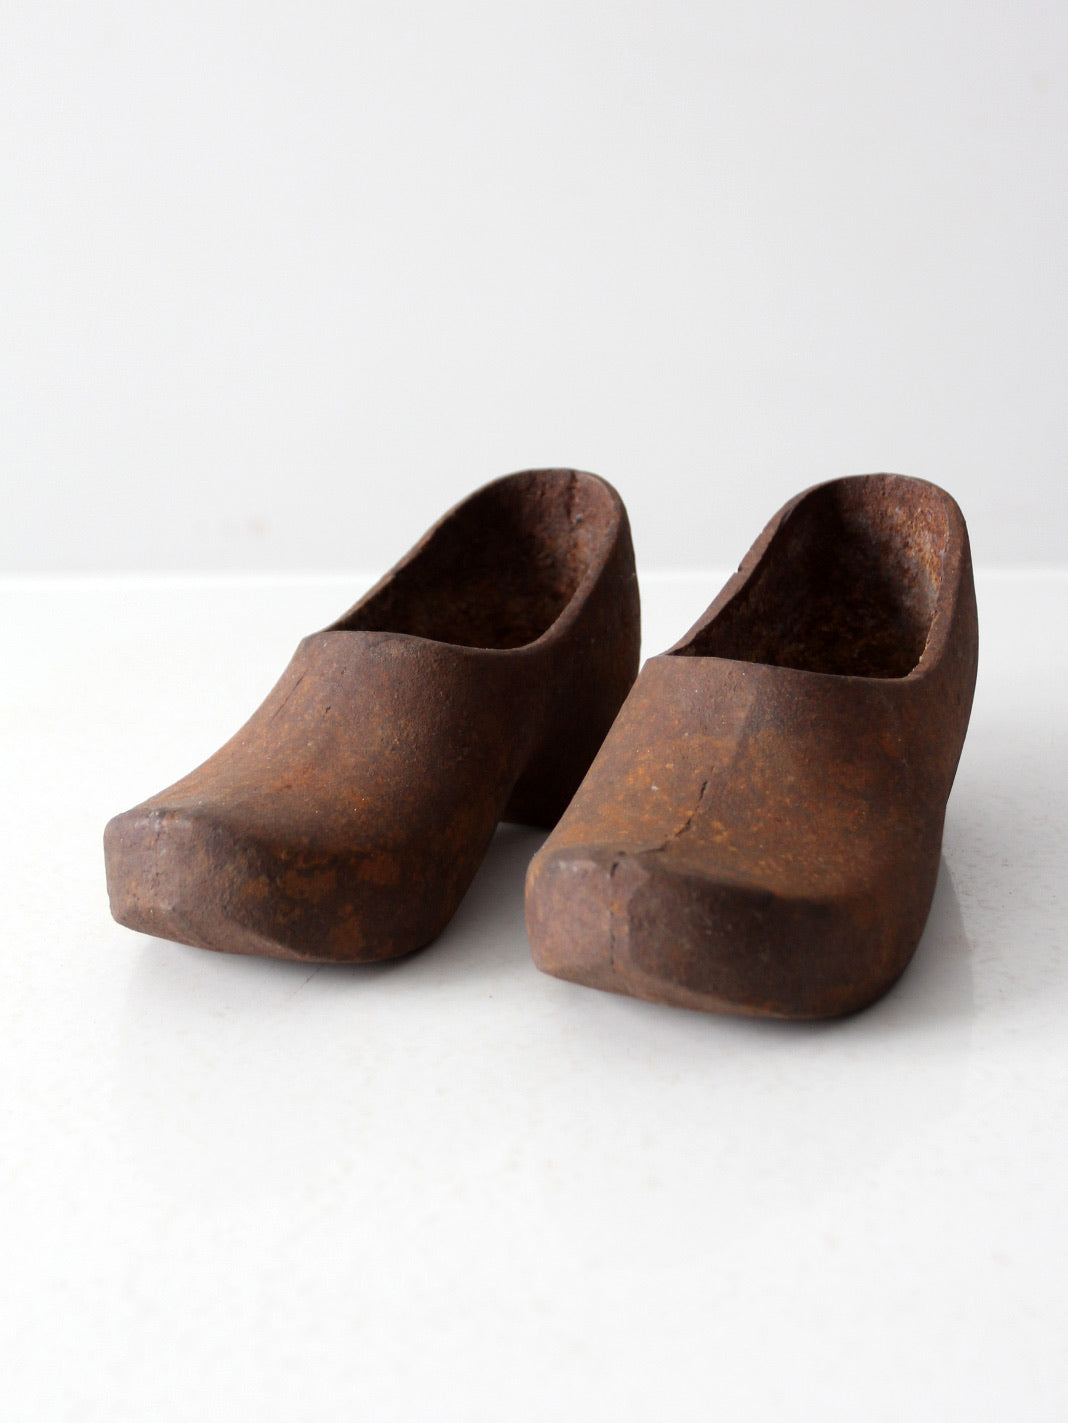 vintage cast iron decorative clogs